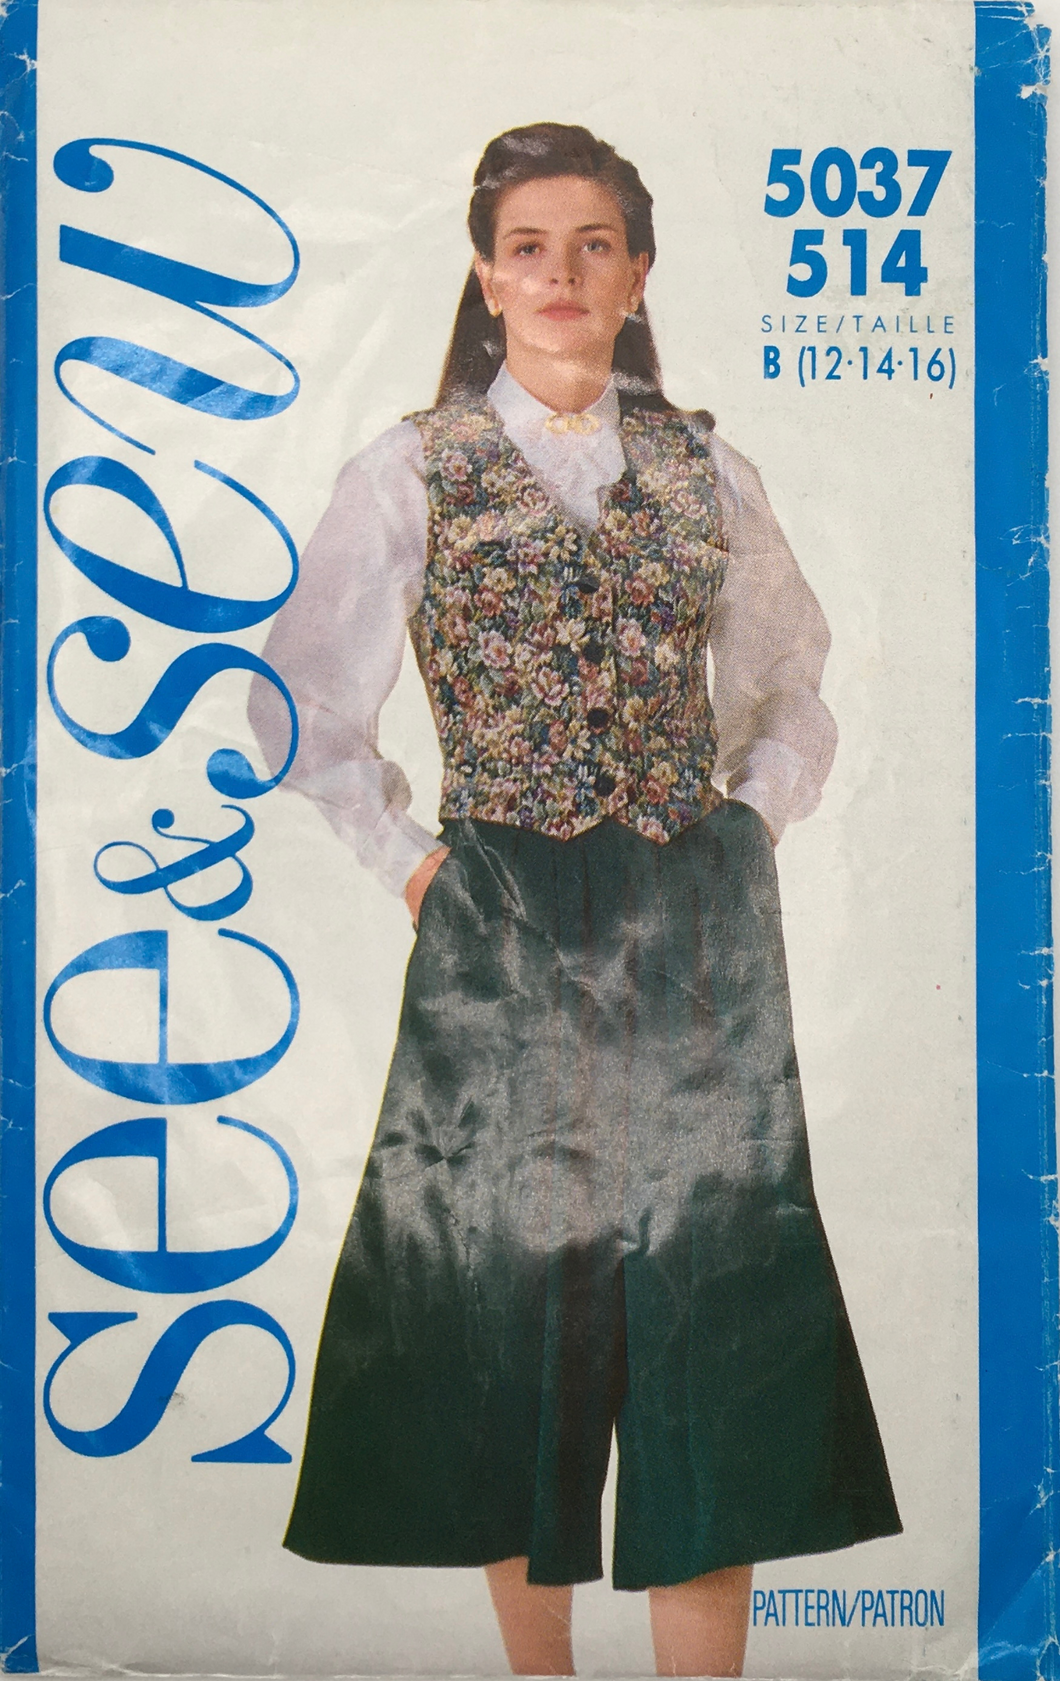 1990 Vintage Sewing Pattern: See & Sew 5037/514